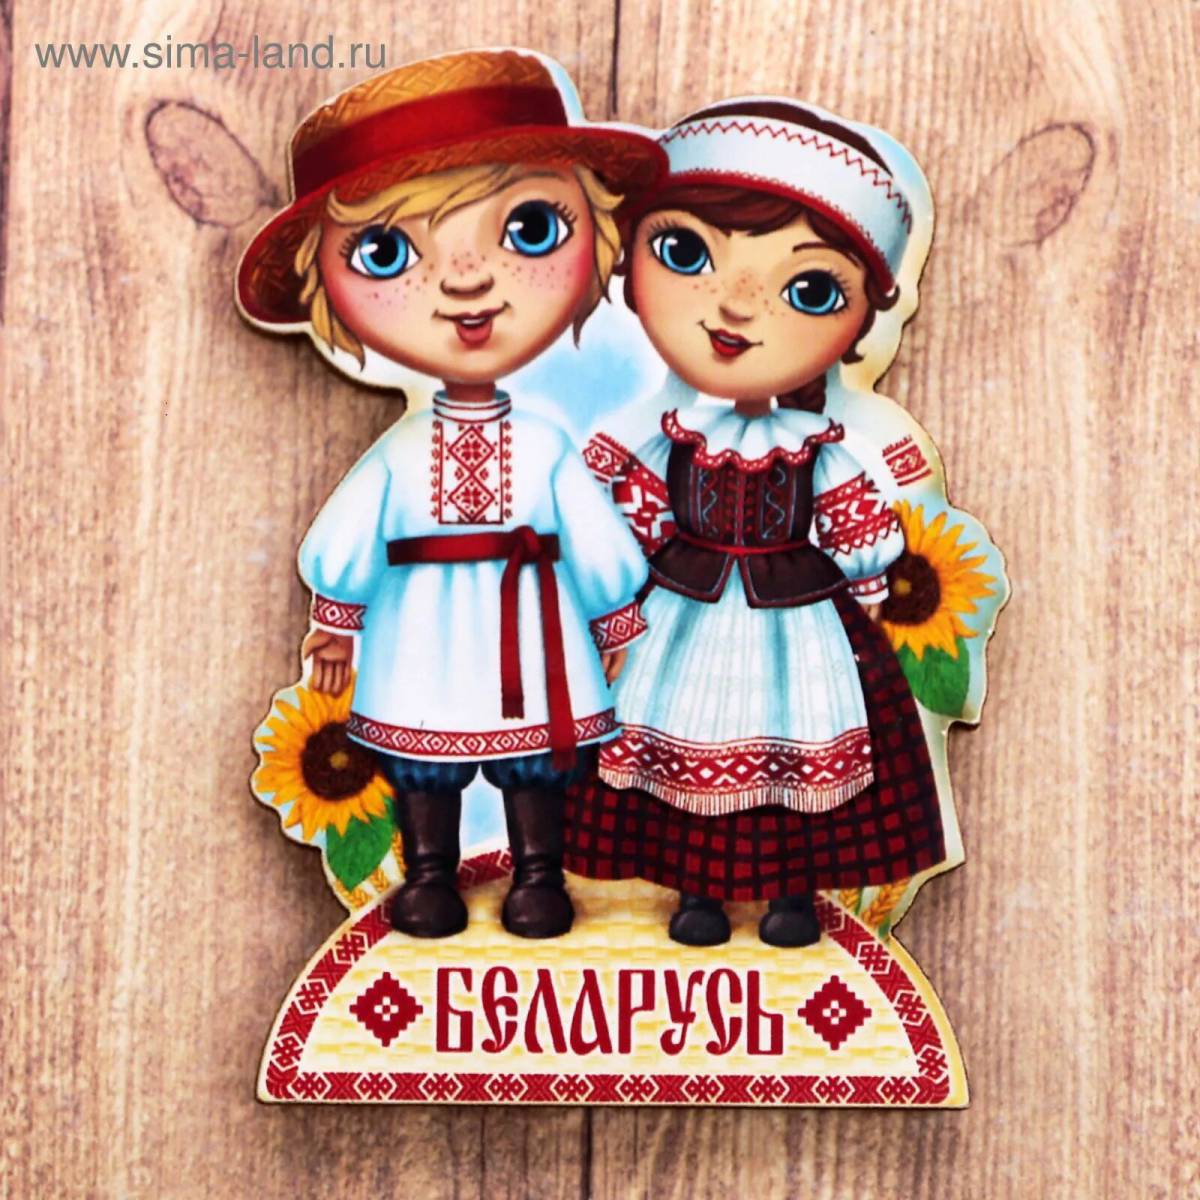 Беларусь для детей #15